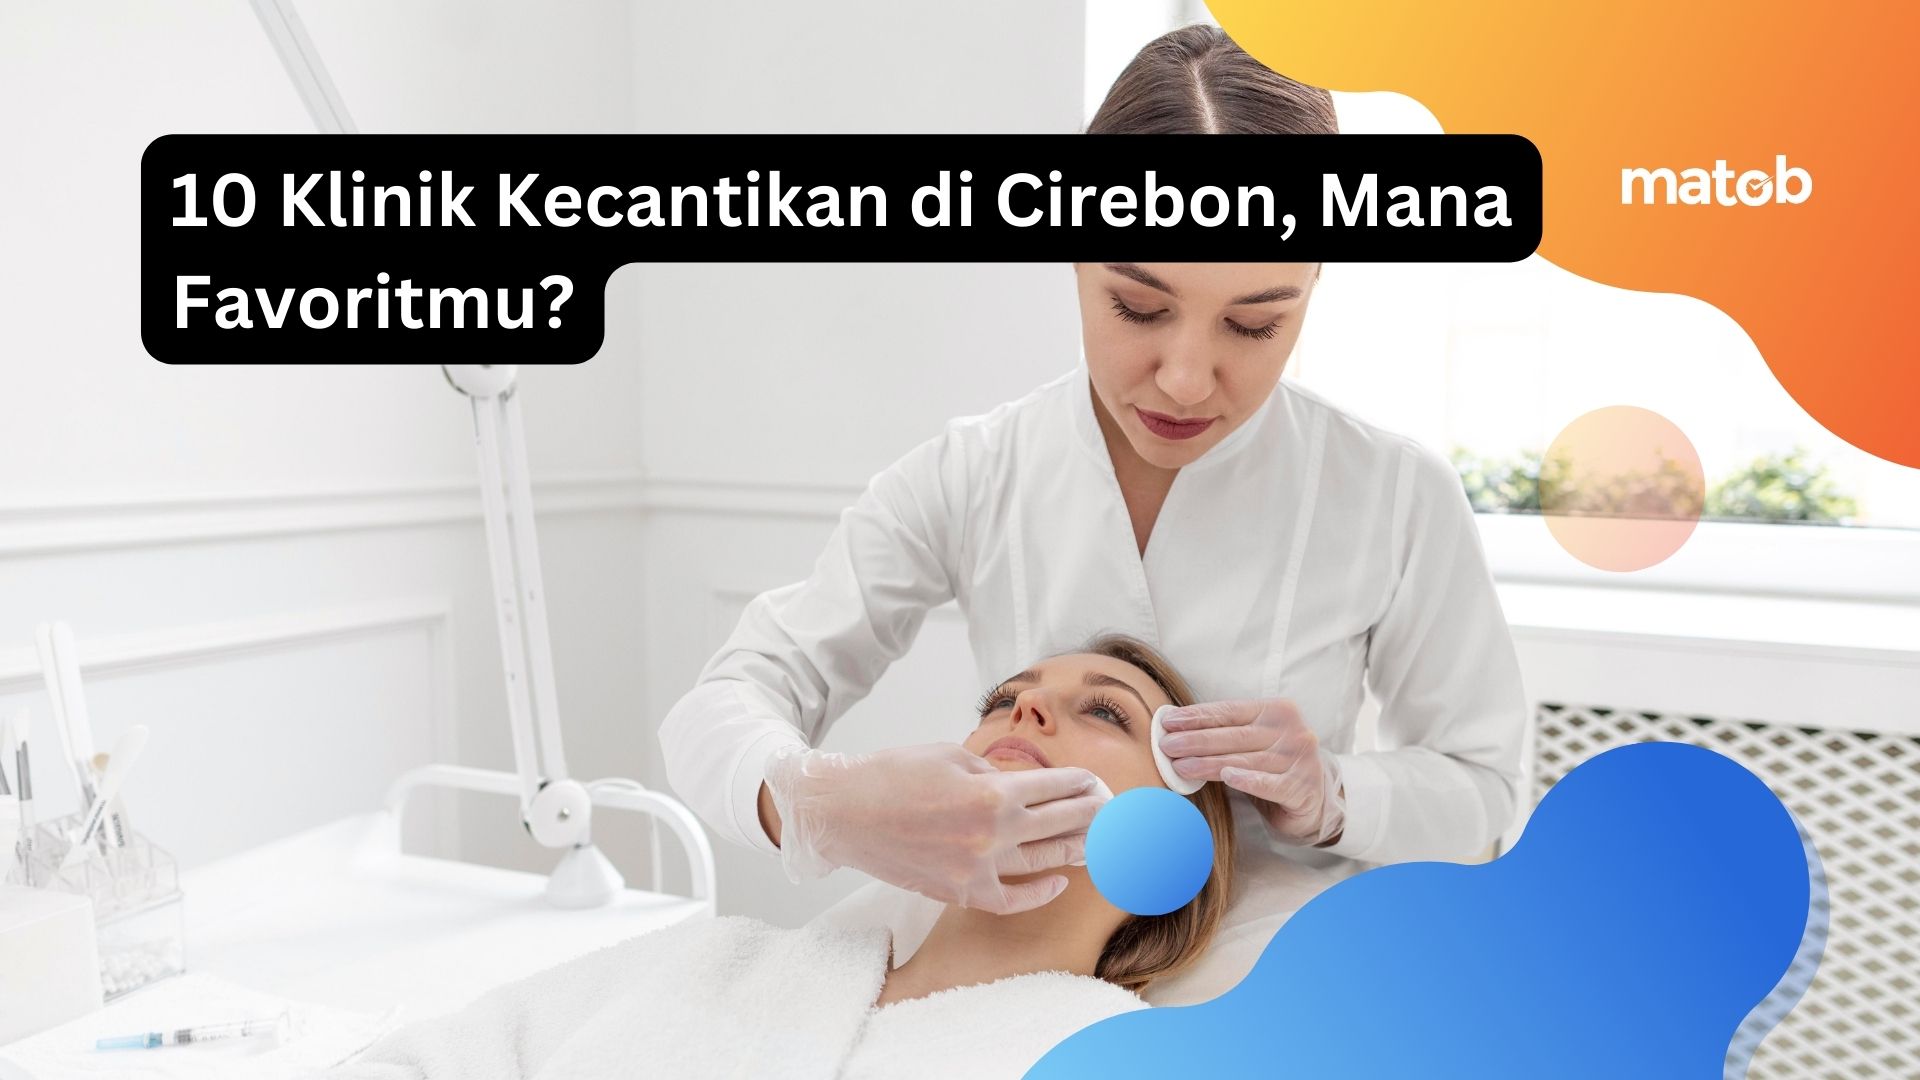 10 Klinik Kecantikan di Cirebon, Mana Favoritmu?